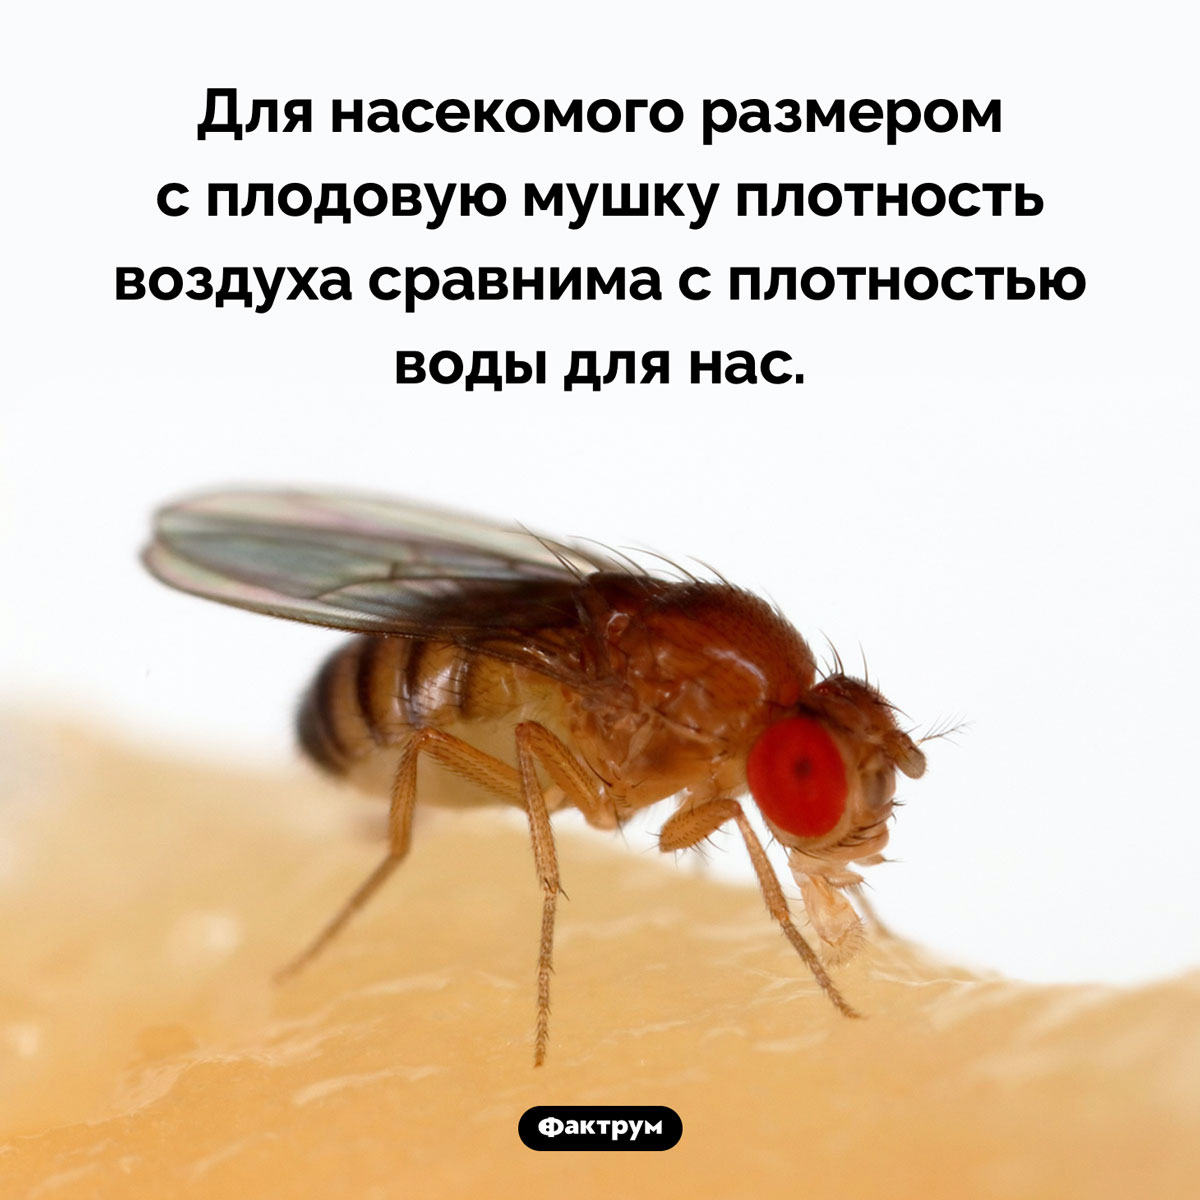 Плодовая мушка и плотность воздуха. Для насекомого размером с плодовую мушку плотность воздуха сравнима с плотностью воды для нас.